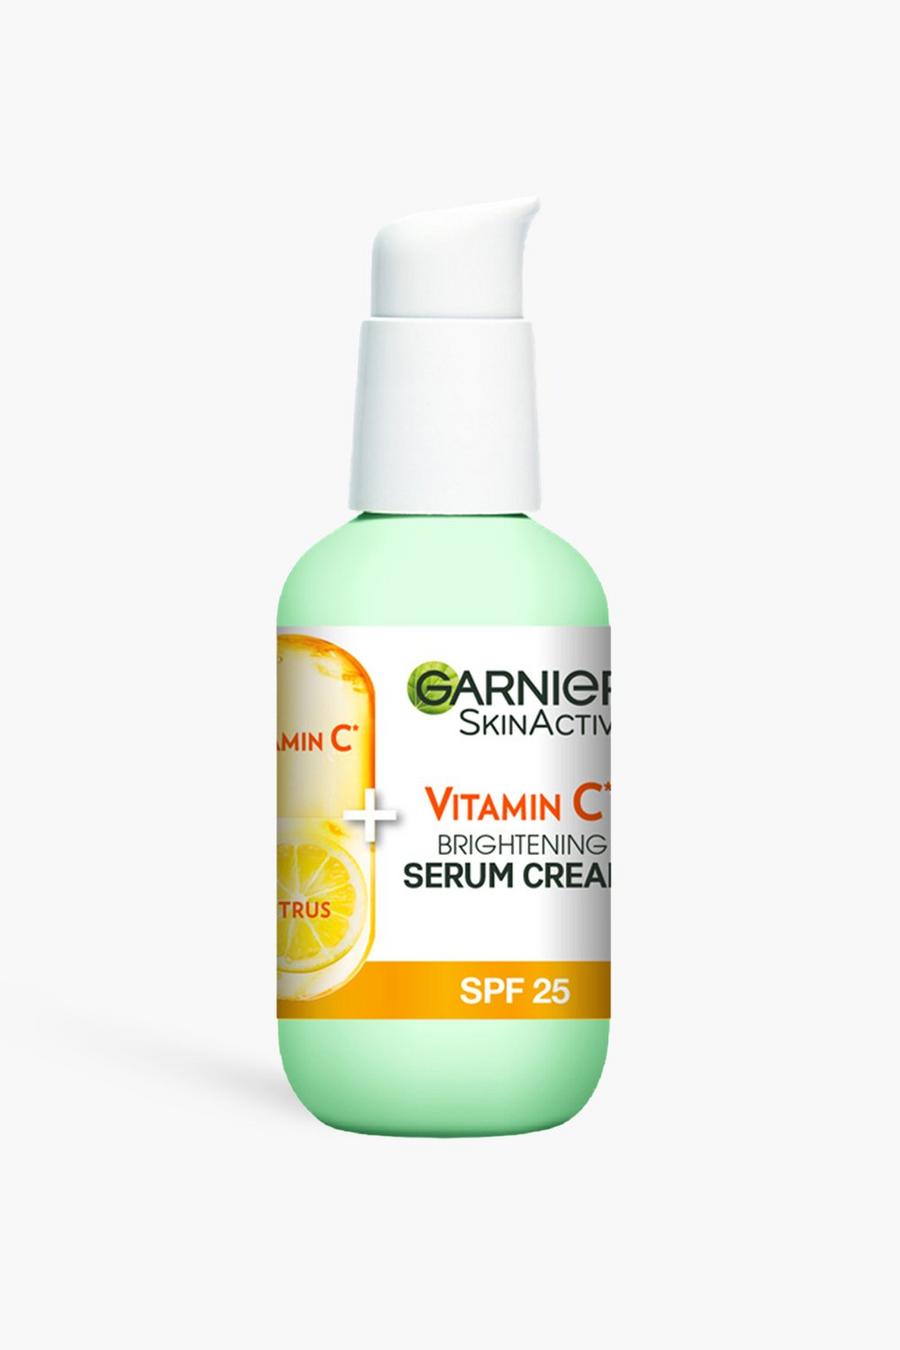 Yellow Garnier Vitamin C Serum Cream